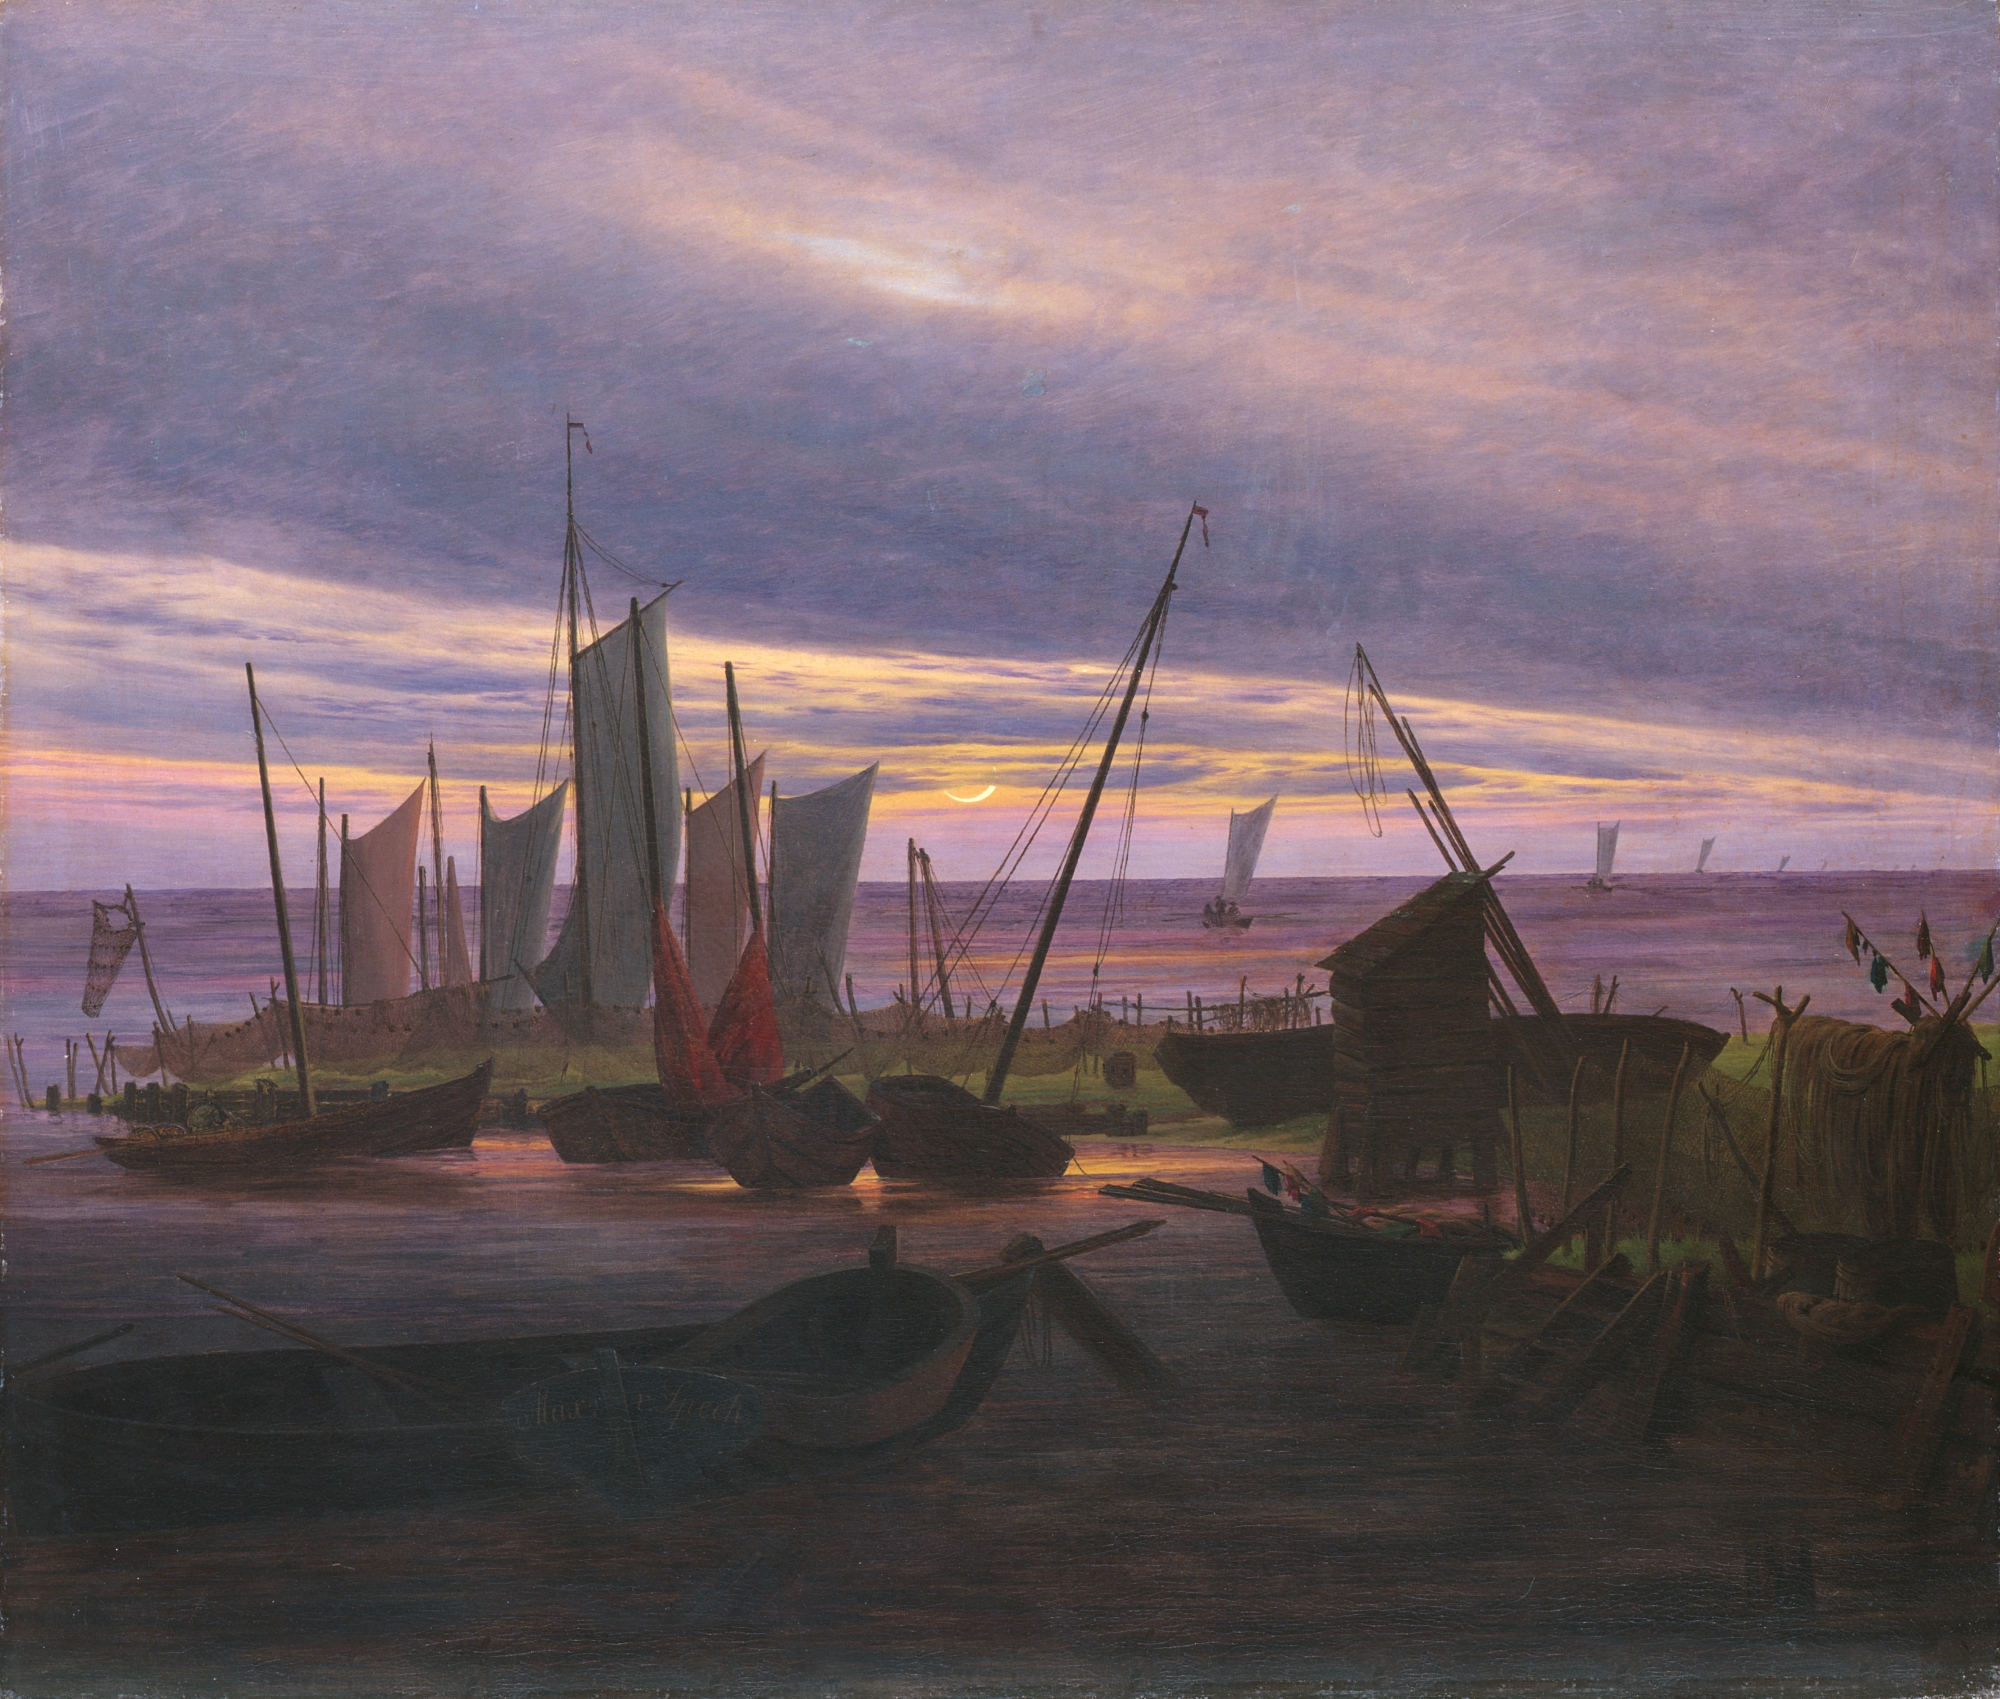 Lodě večer v přístavu by Caspar David Friedrich - 1828 - 76,5 x 88,2 cm 